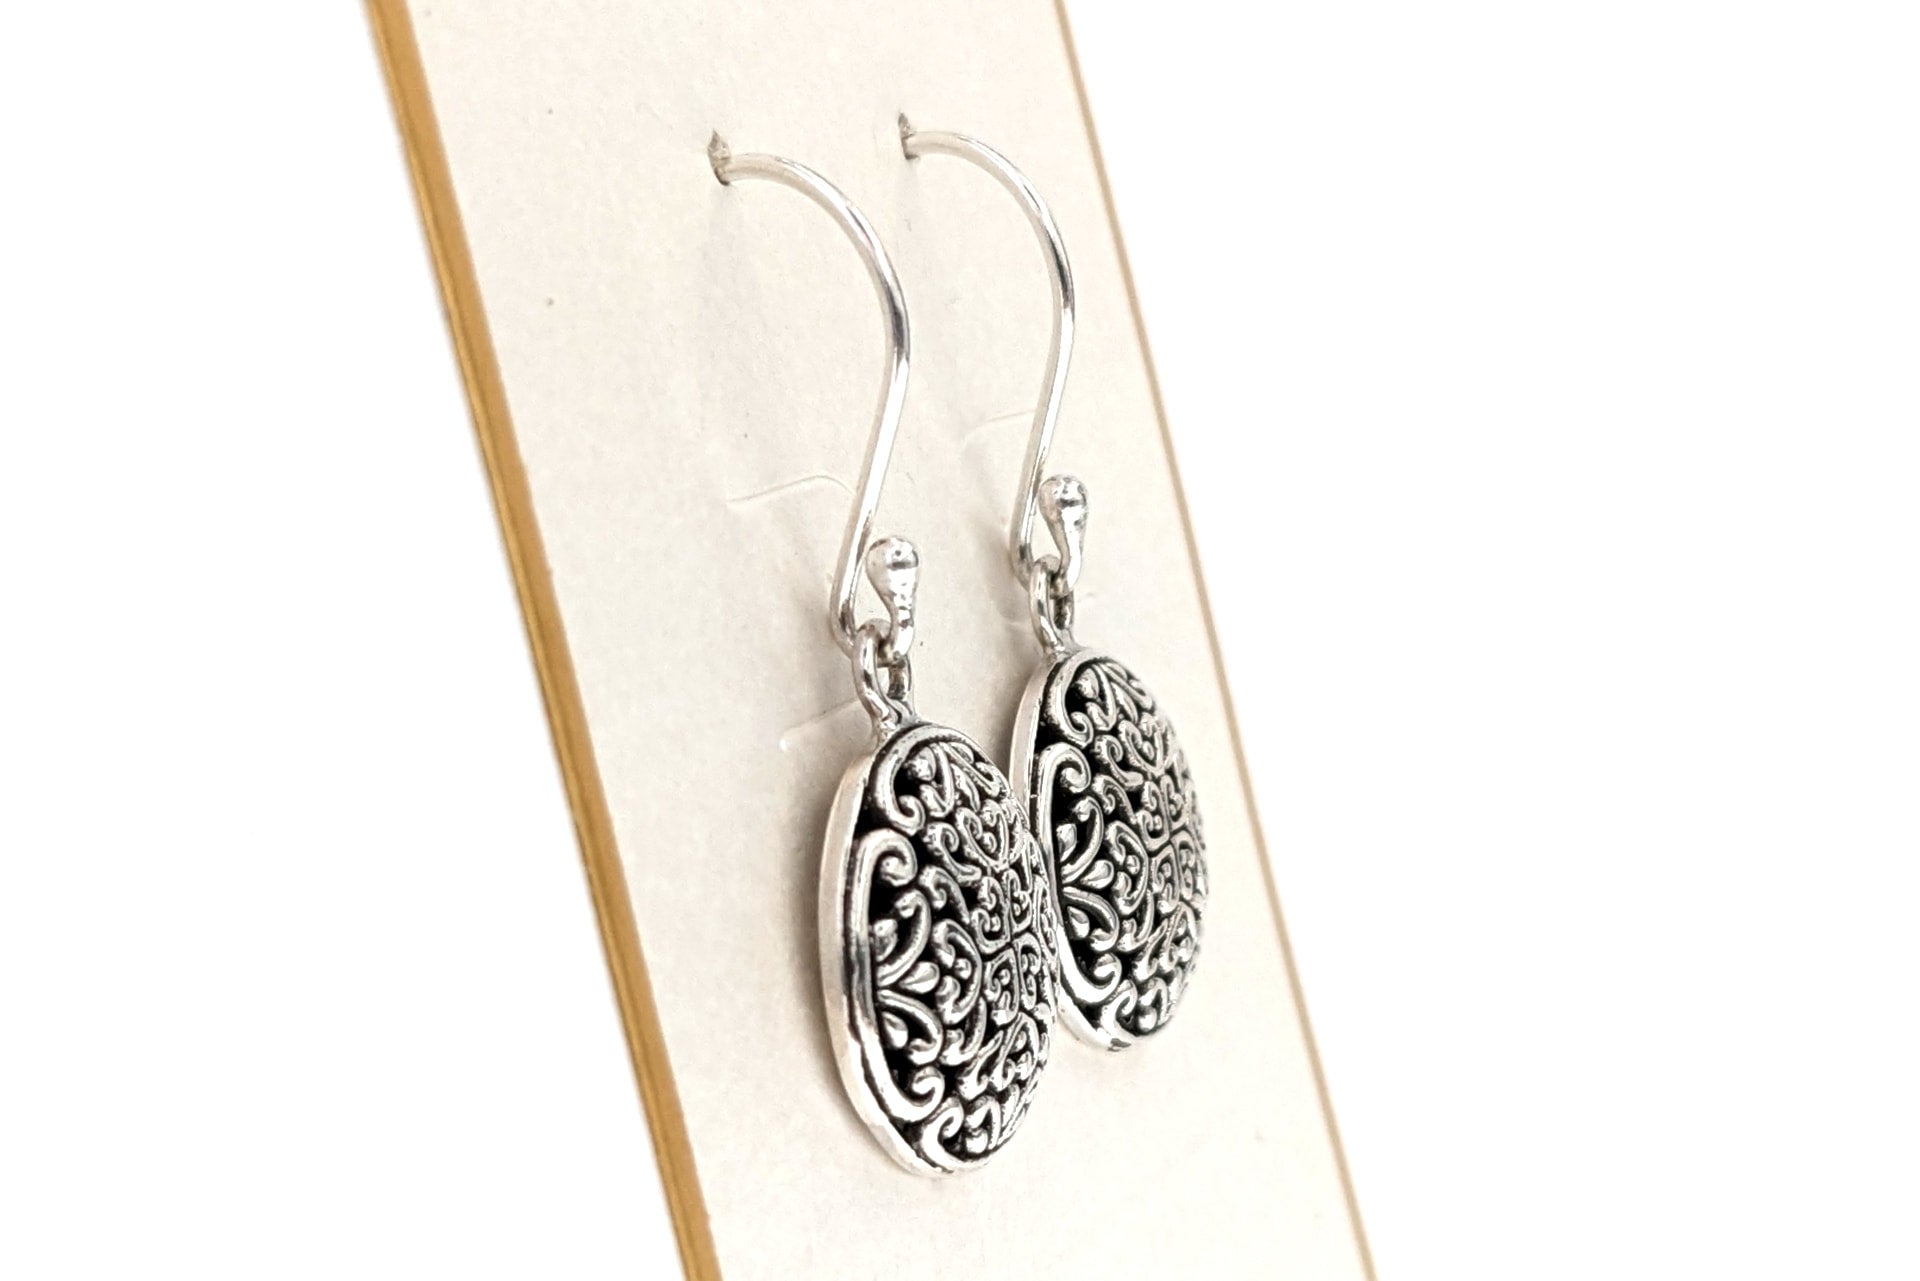 Buy Schwaan™ Pure Silver Filigree Leaf Earrings Jewellery | Handcrafted Sterling  Silver Dangler Earrings for Stylish Women & Girls at Amazon.in